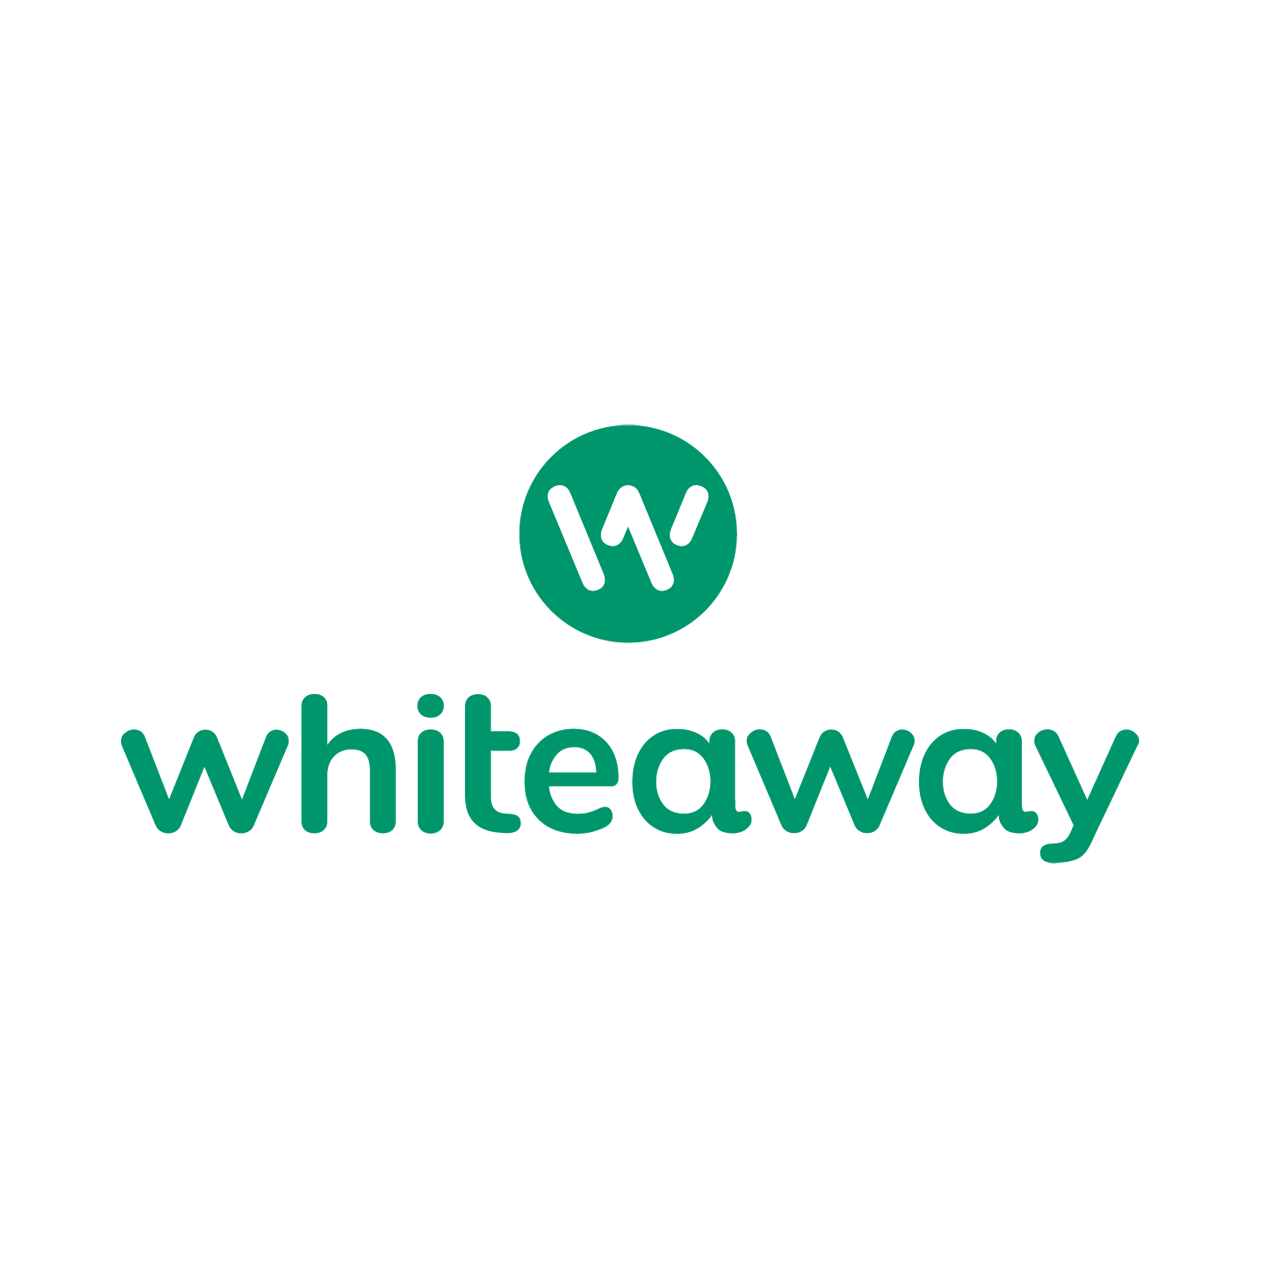 Whiteaway logo rabattkoder gratis